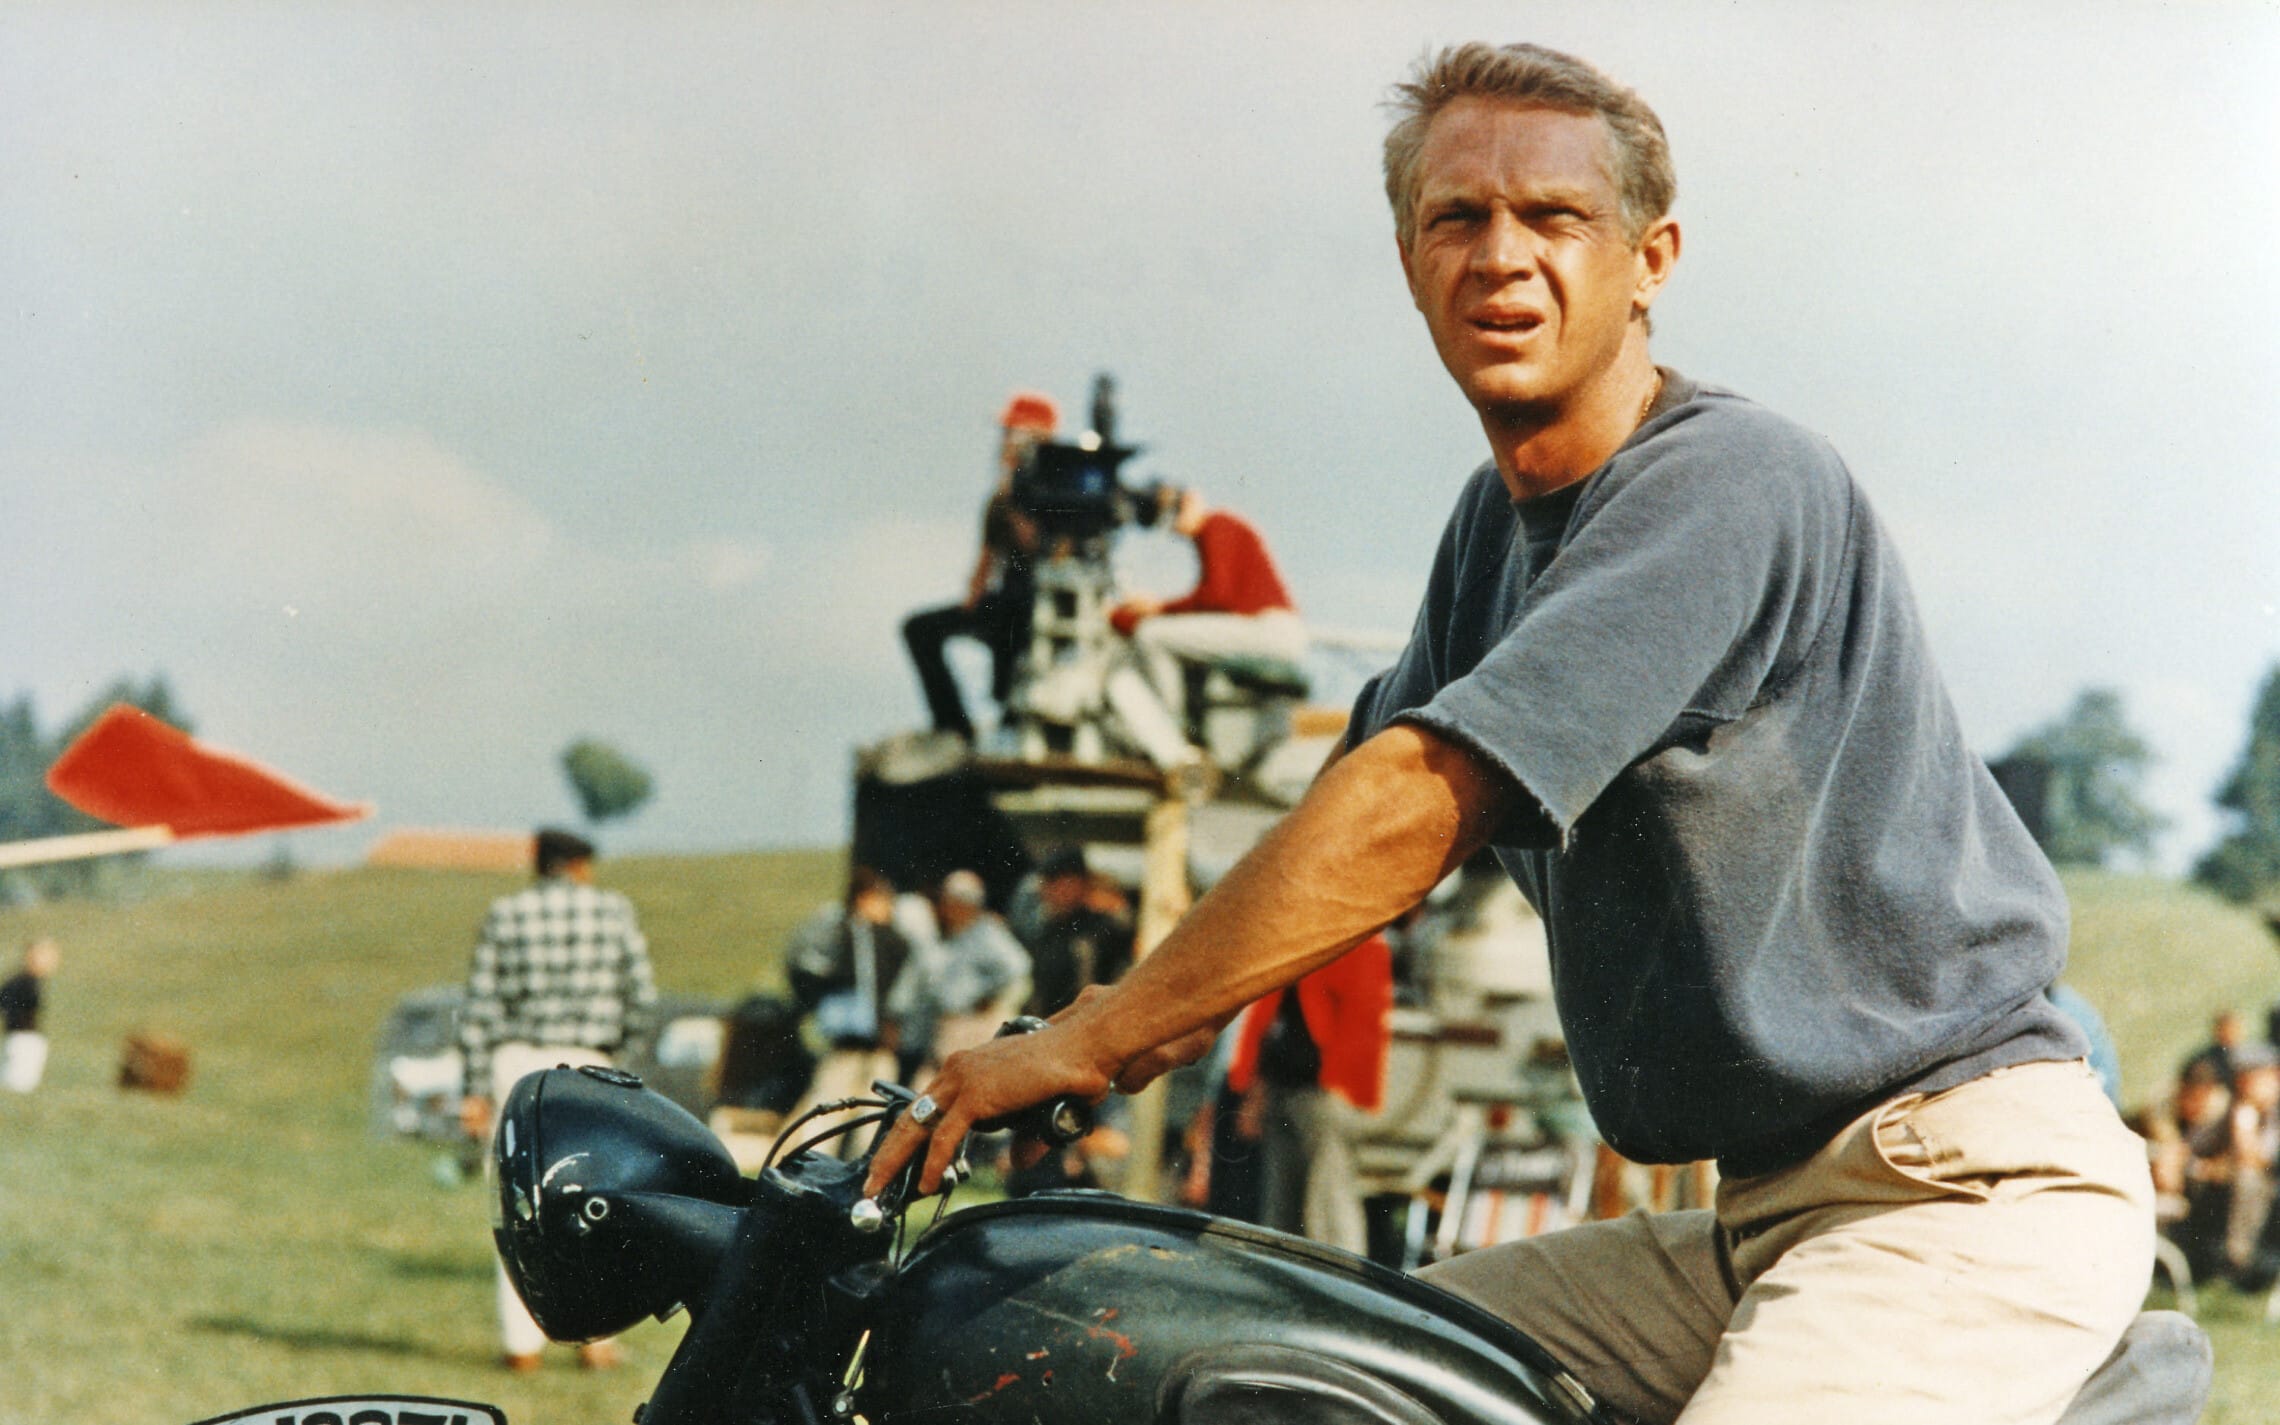 סטיב מקווין בסרט "הבריחה הגדולה" מ-1963 (צילום: Pictorial Press Ltd / Alamy)